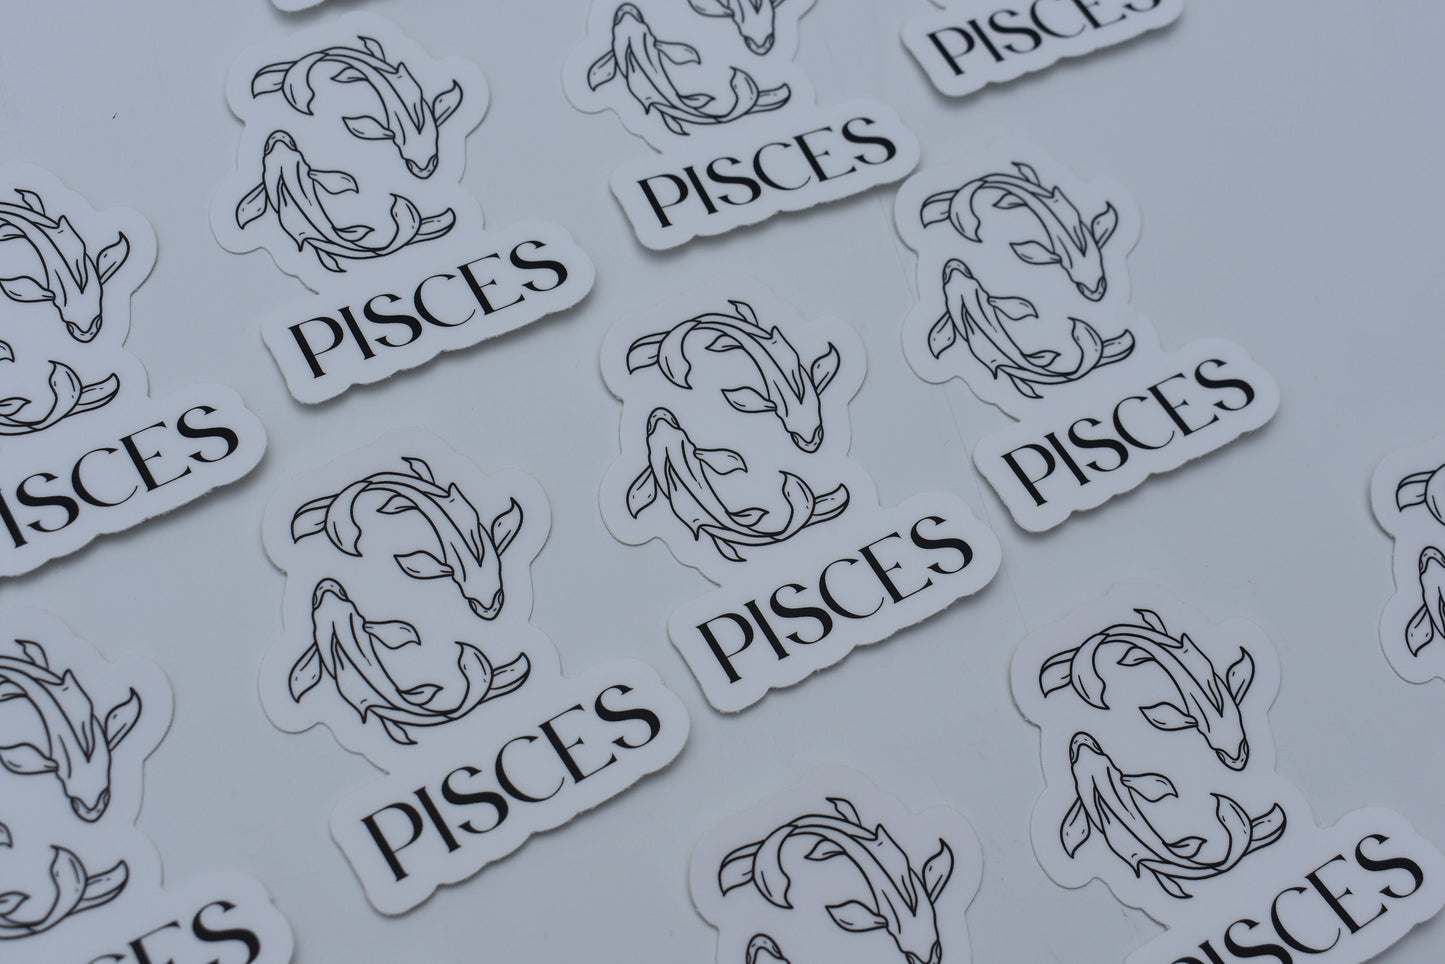 Pisces Line drawn astrology sticker, Simple Zodiac sign sticker, Laptop sticker, Waterbottle sticker, Vinyl sticker